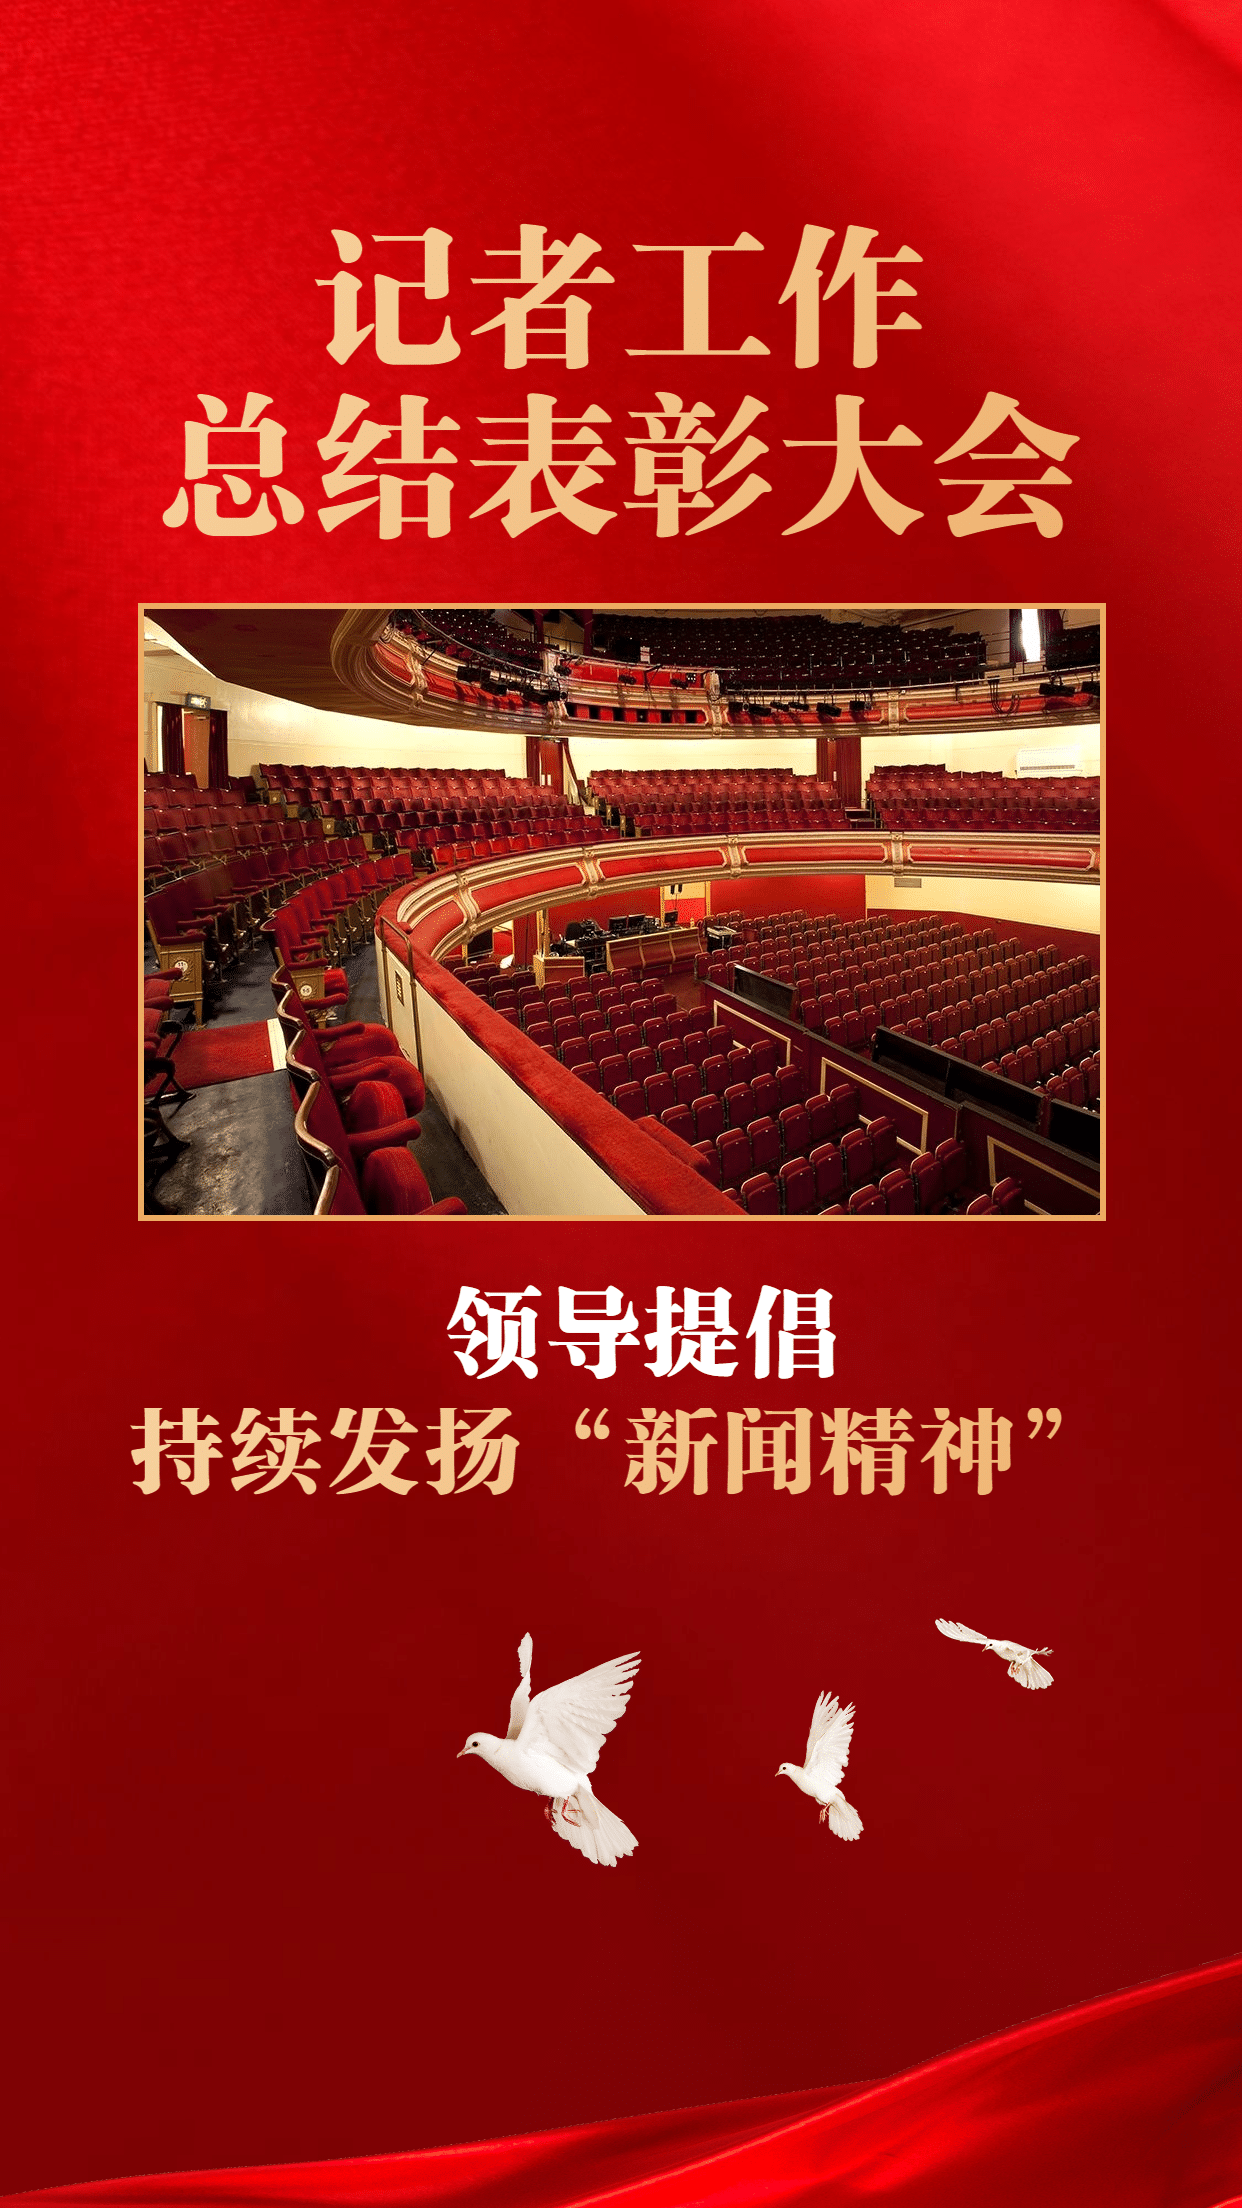 政务媒体中国记者节新闻精神会议表彰政务风手机海报预览效果